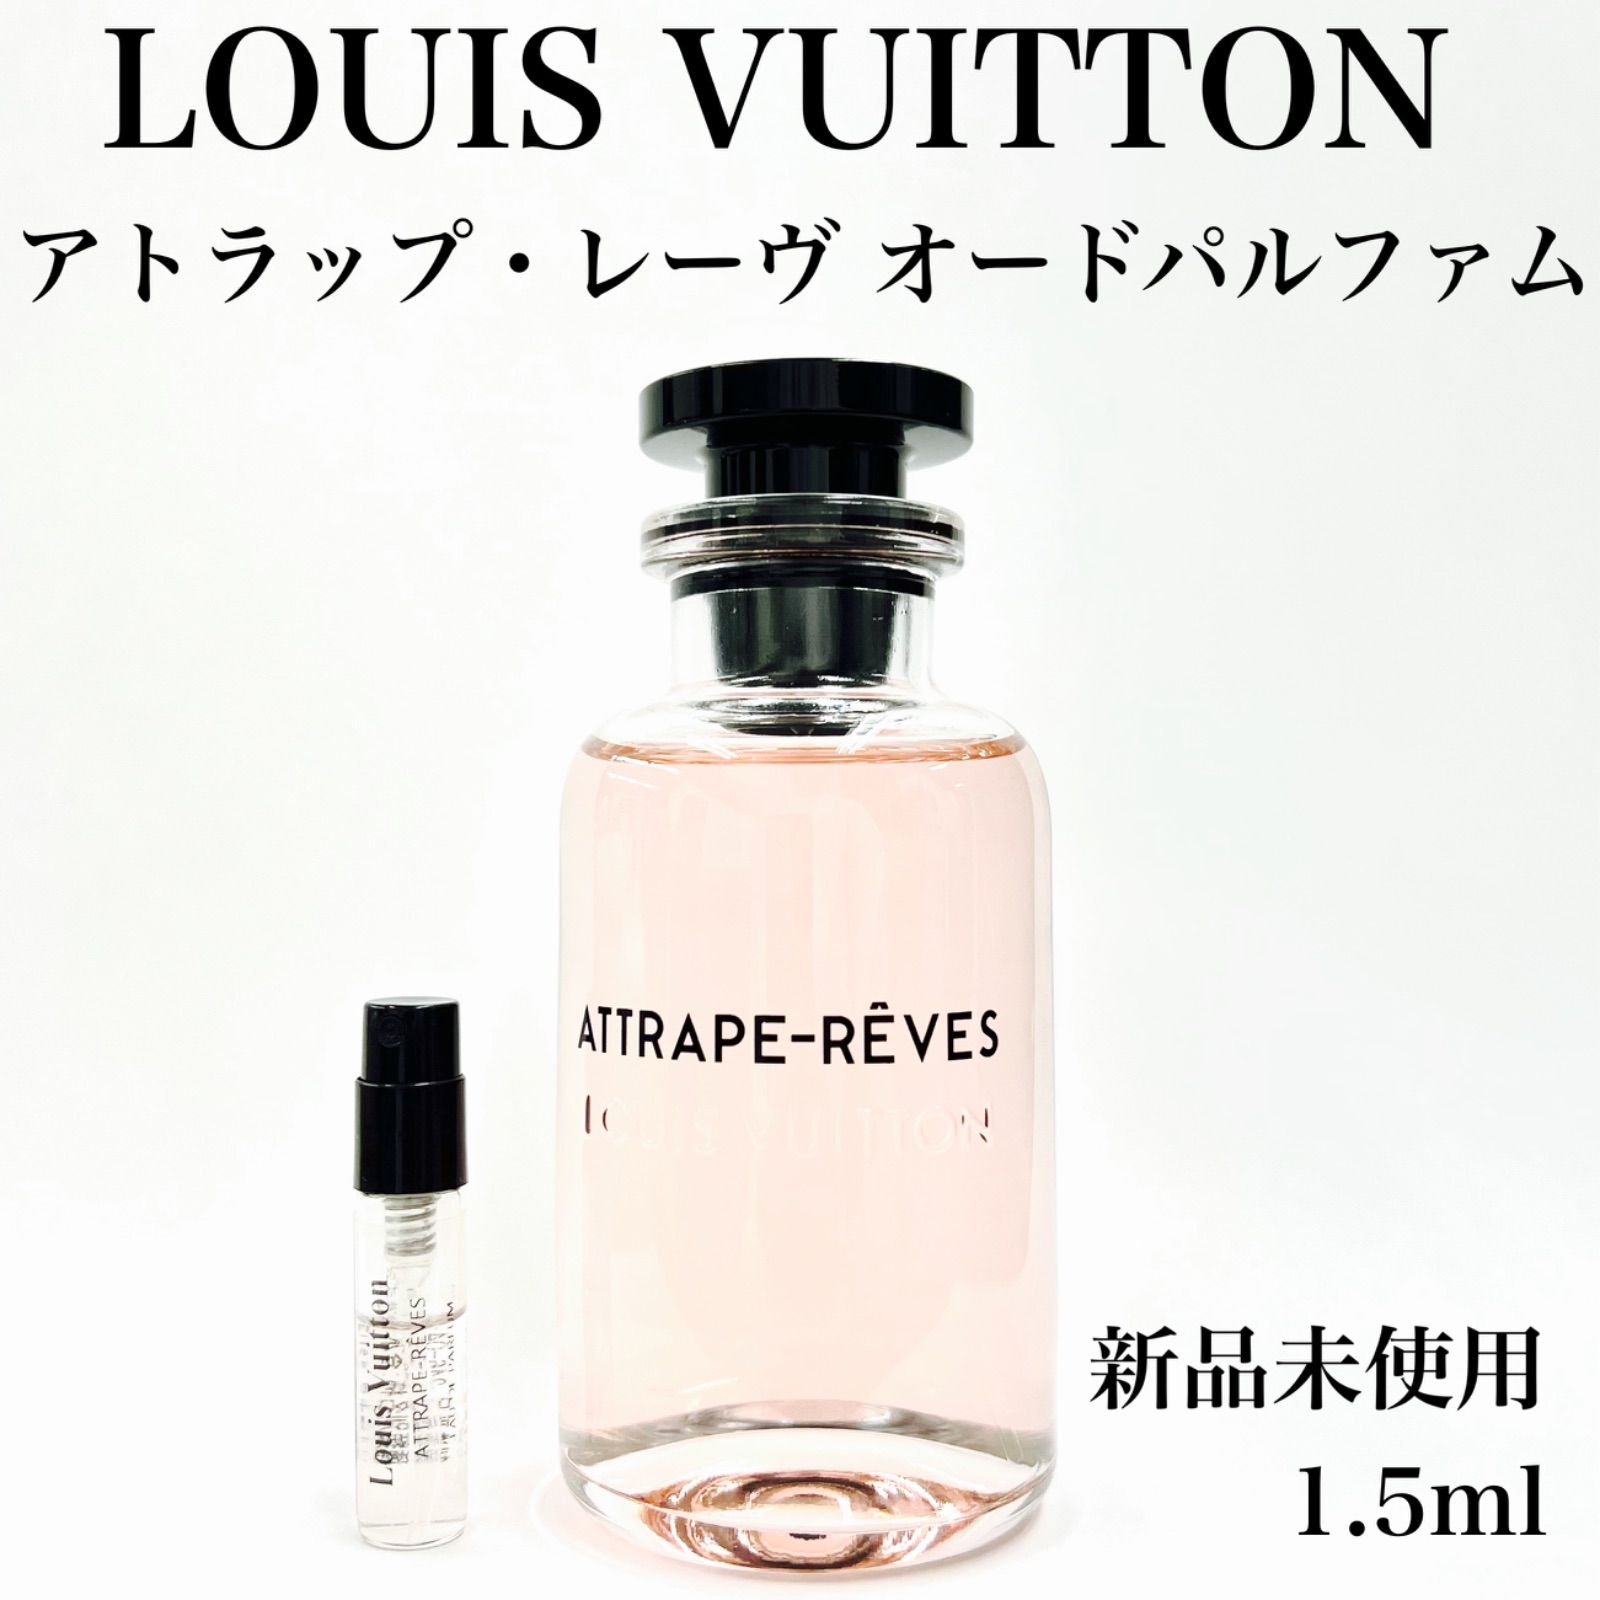 LOUIS VUITTON ルイヴィトン アトラップ・レーヴ 香水 1.5ml - メルカリ